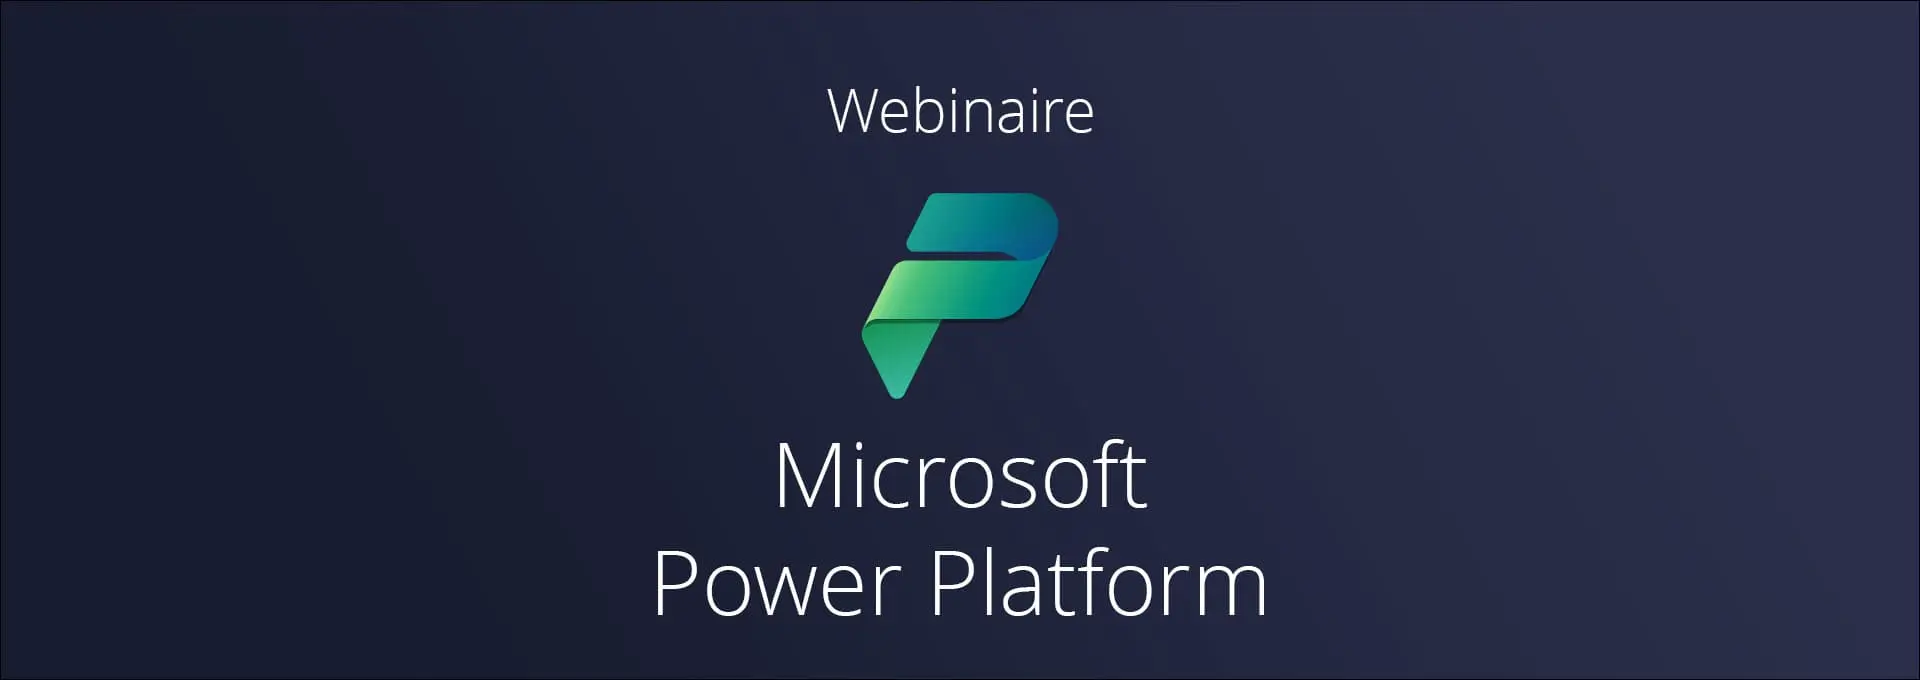 Actualités Webinaires - Power Platform : collectez, analysez et automatisez vos données en quelques clics